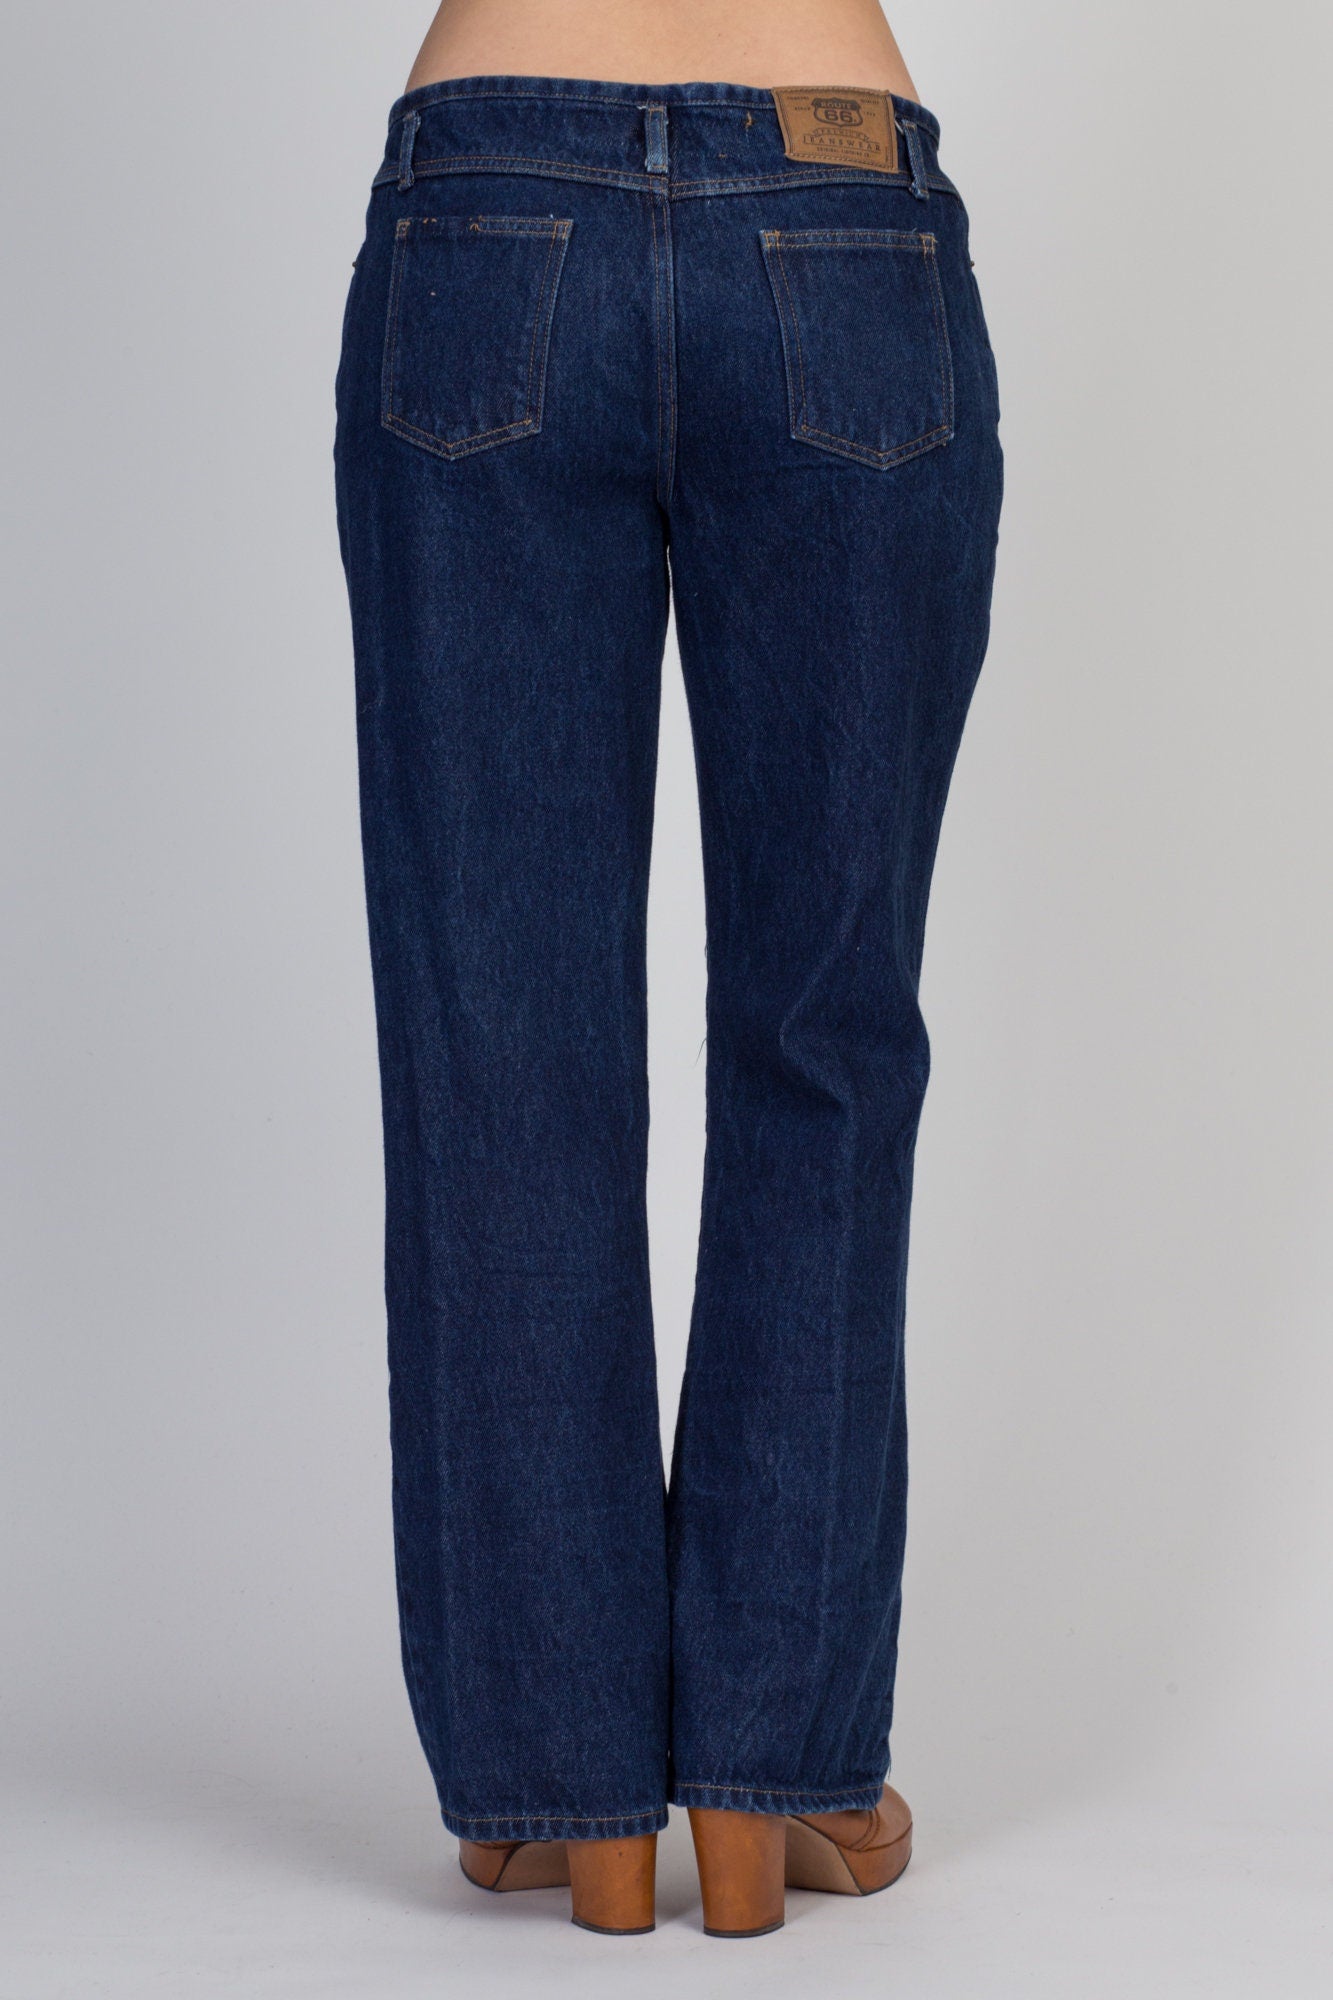 90s Y2K Dark Wash Denim Bootcut Jeans - Medium 